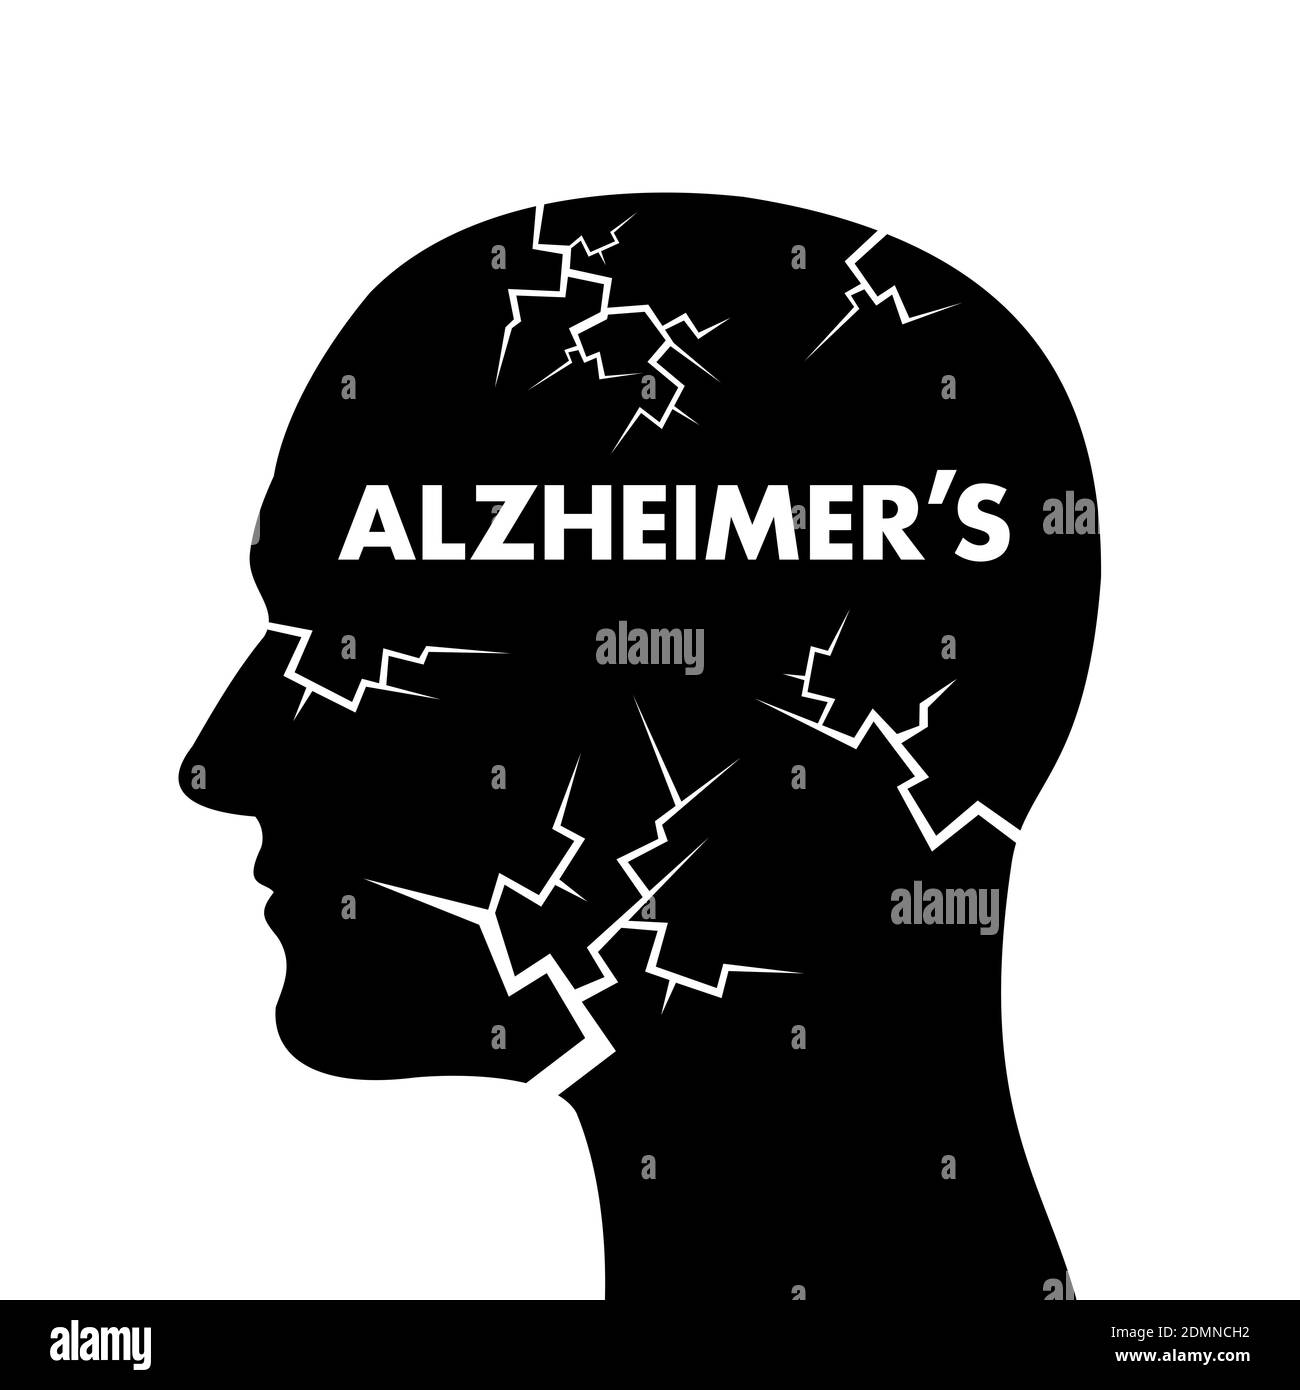 La maladie d'Alzheimer - détérioration, dégénérescence, désintégration et déclin du cerveau et de l'esprit dans la tête de l'homme et de l'homme. Illustration vectorielle Banque D'Images